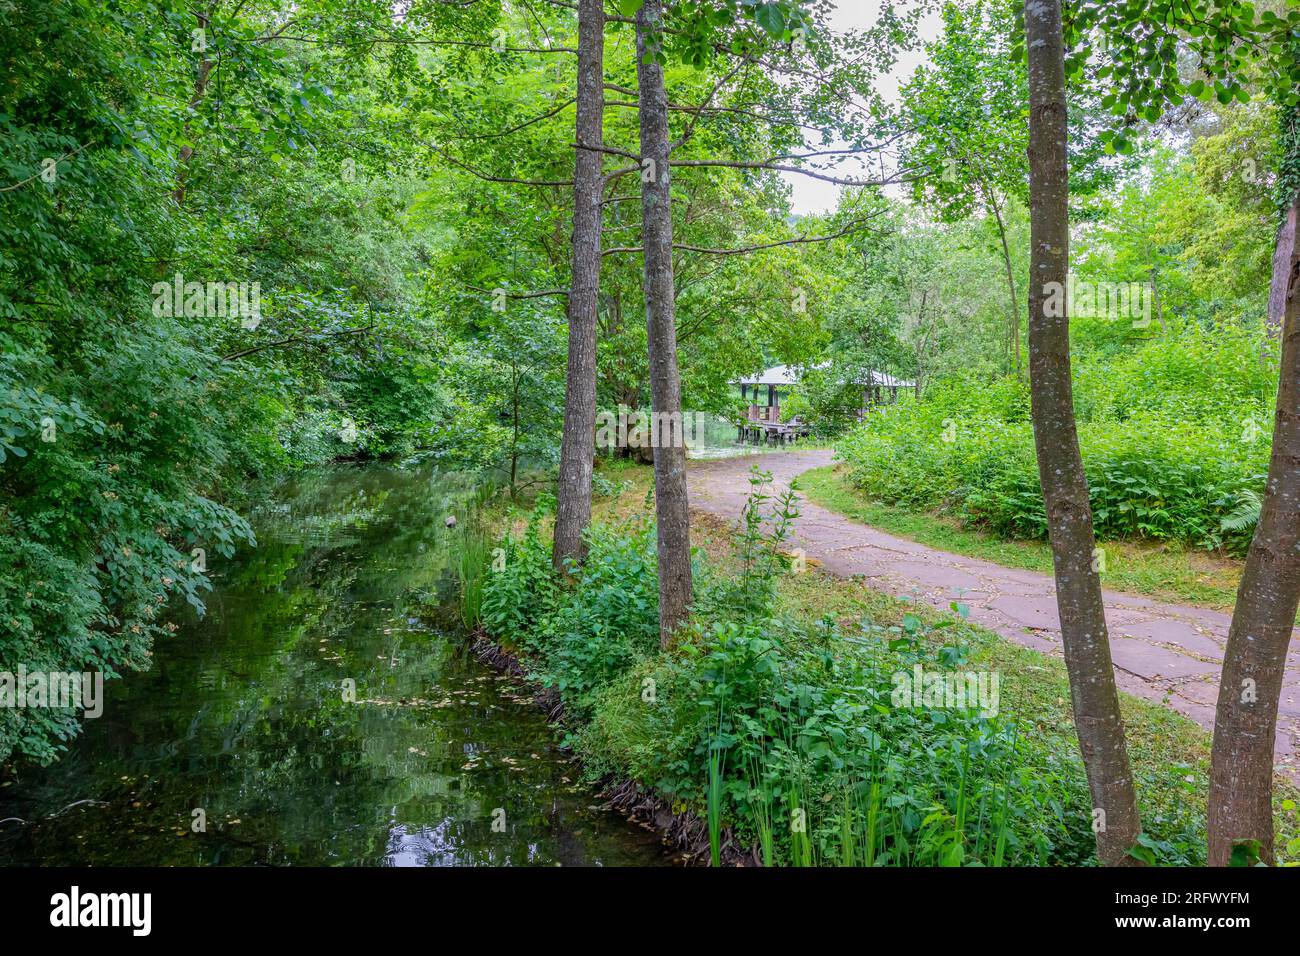 Sentiero pedonale vicino a uno stretto ruscello circondato da vegetazione selvaggia e alberi lussureggianti con vegetazione verde, gazebo in legno sullo sfondo, soleggiata giornata estiva Foto Stock